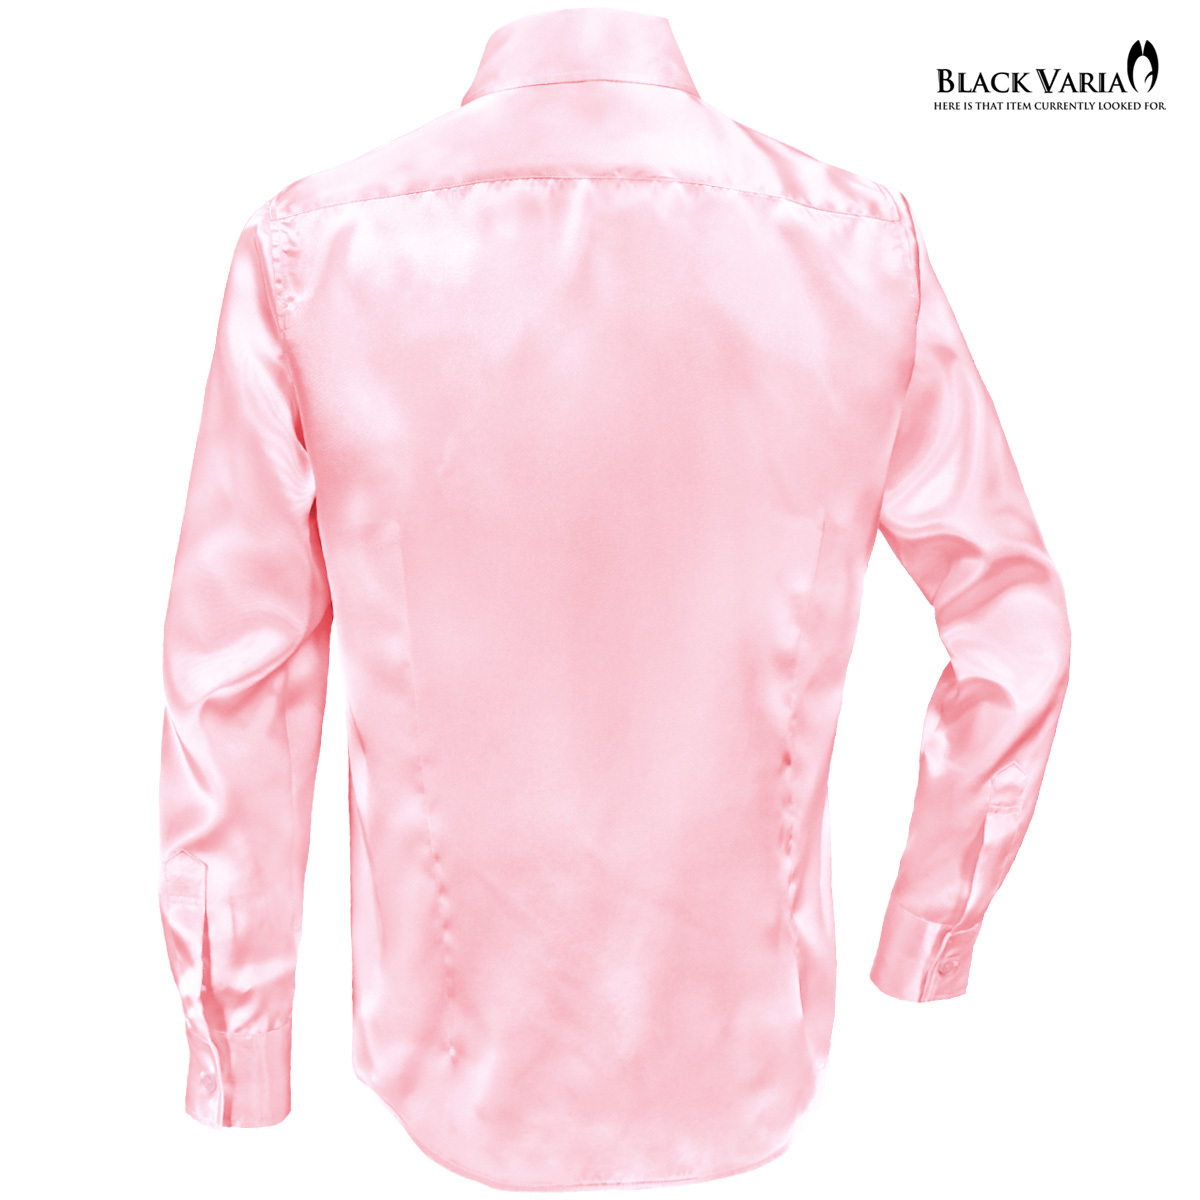  specification модификация SALE* кошка pohs возможно *141405-pk2 BLACK VARIA глянец атлас одноцветный тонкий постоянный цветное платье рубашка мужской ( свет розовый ) SS костюм 